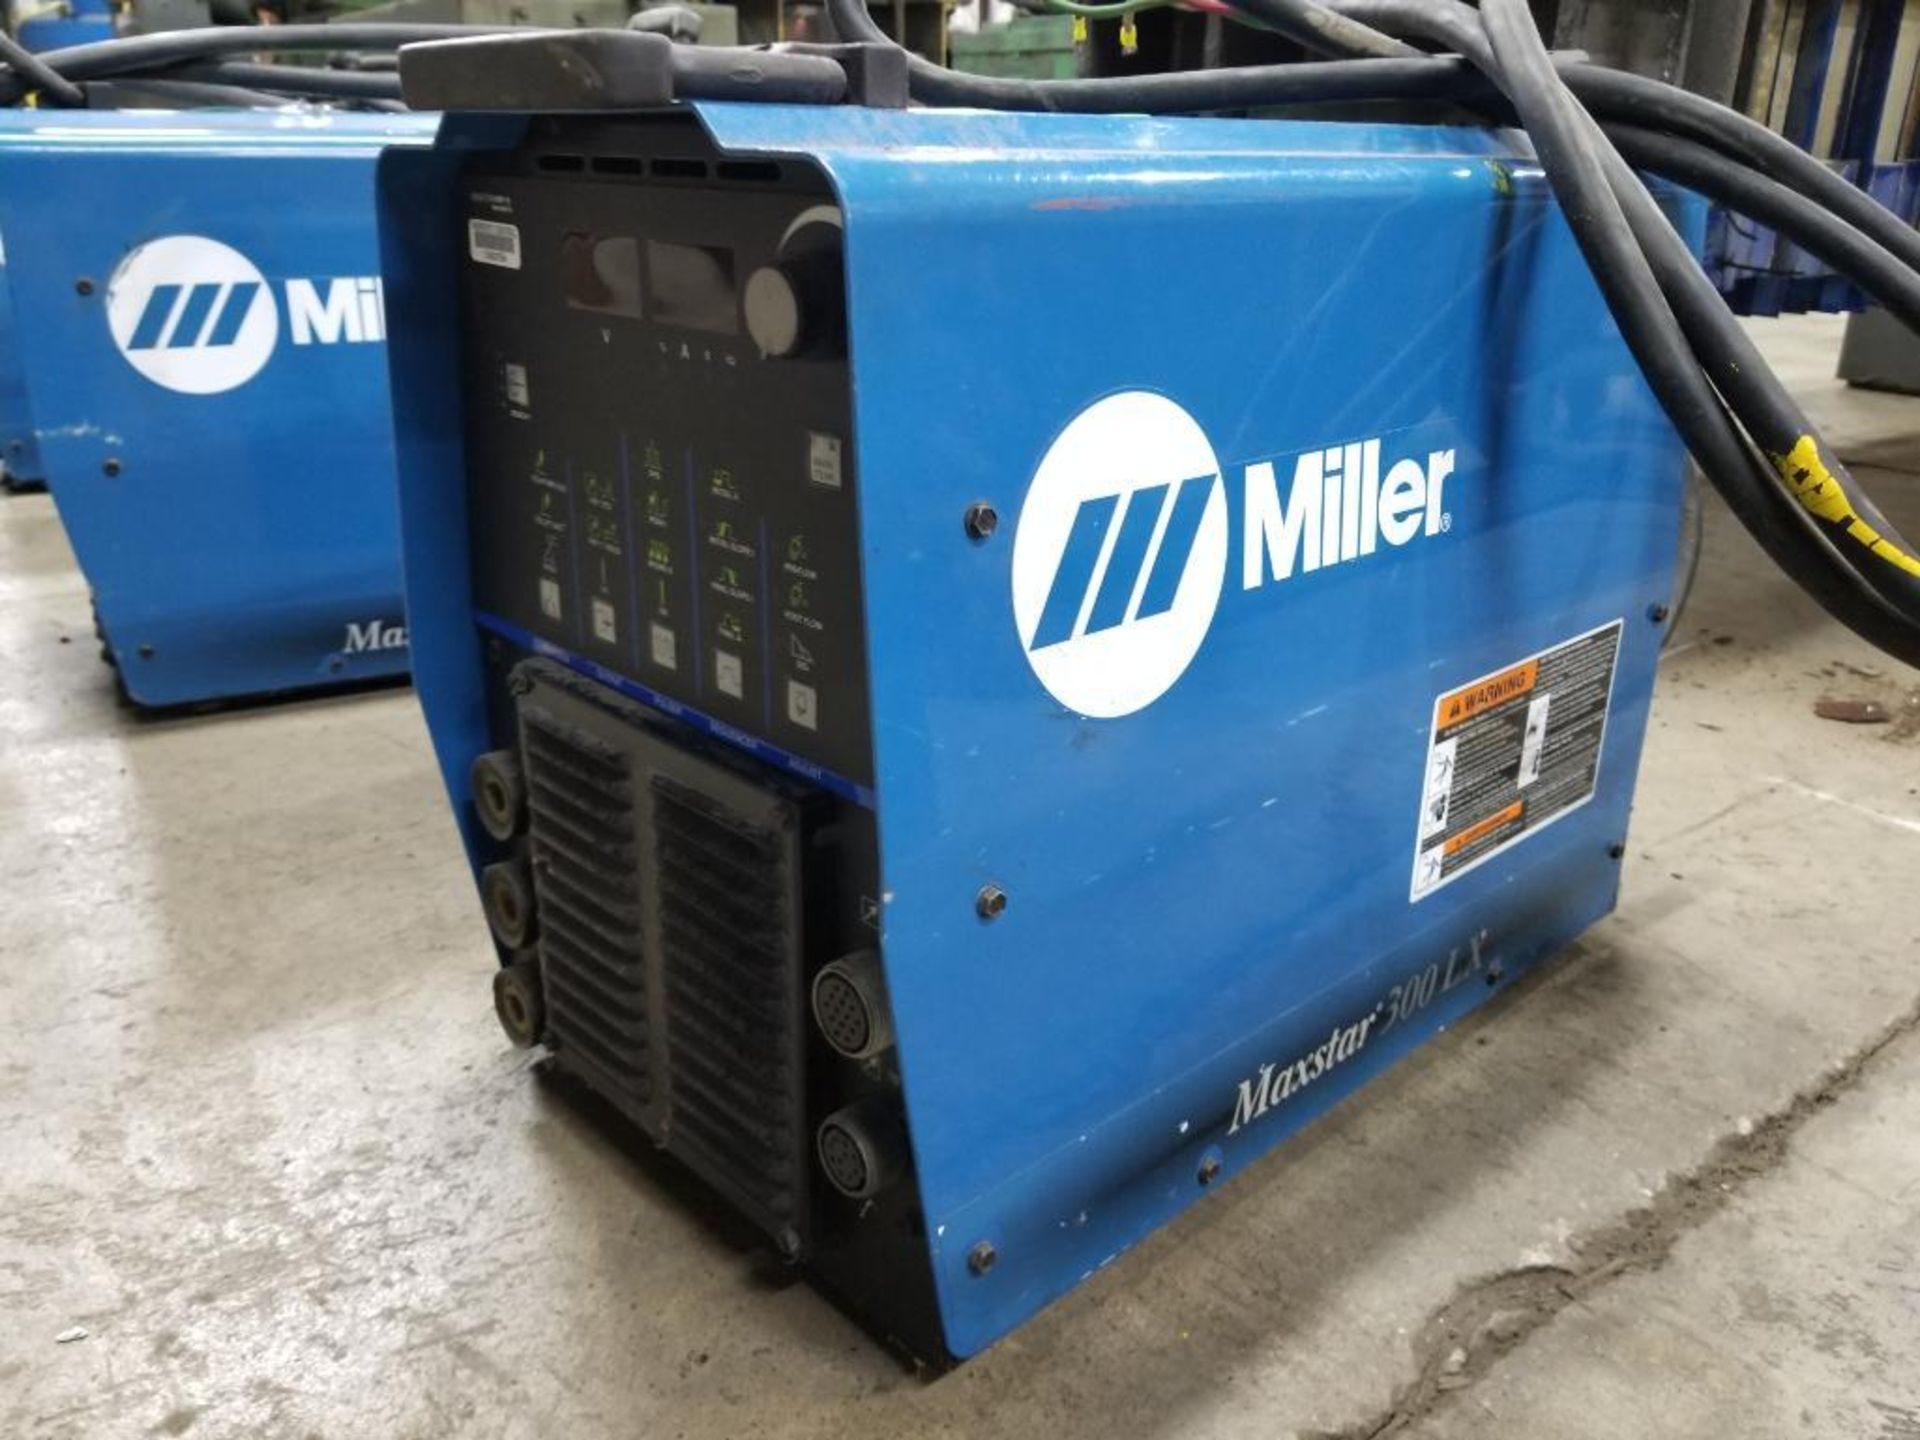 Miller Maxstar 300LX welder power supply. 230/460v single OR 3 phase.